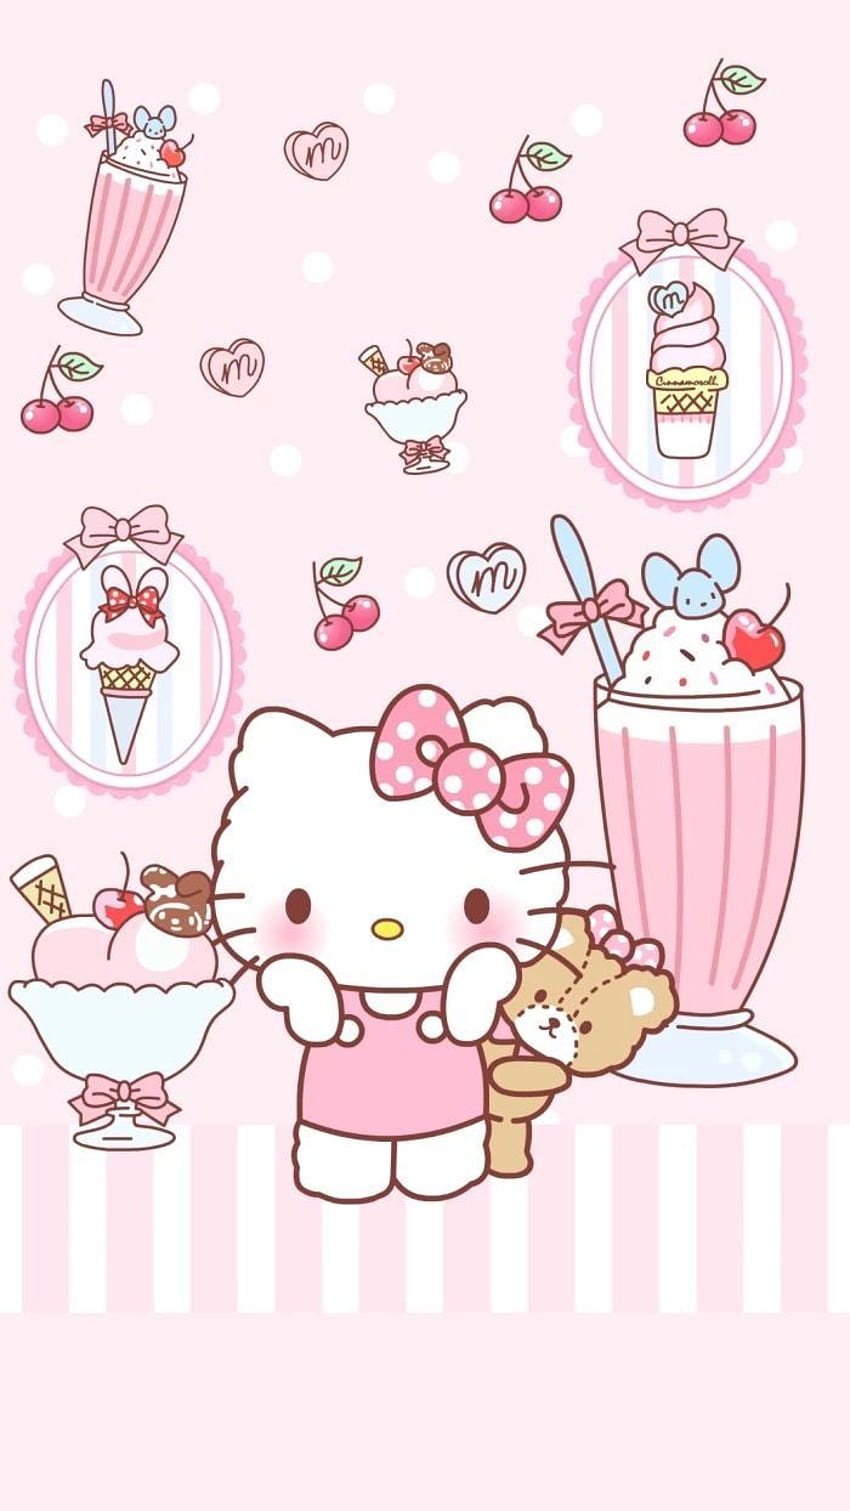 Hình nền Hello Kitty dễ thương: Hello Kitty là một trong những biểu tượng được yêu thích nhất trên thế giới. Nếu bạn là một fan của Hello Kitty, đừng bỏ lỡ bộ sưu tập hình nền dễ thương này. Những hình ảnh tươi sáng và đầy màu sắc sẽ khiến bạn cảm thấy thật vui vẻ và bình yên trên iPad của mình.